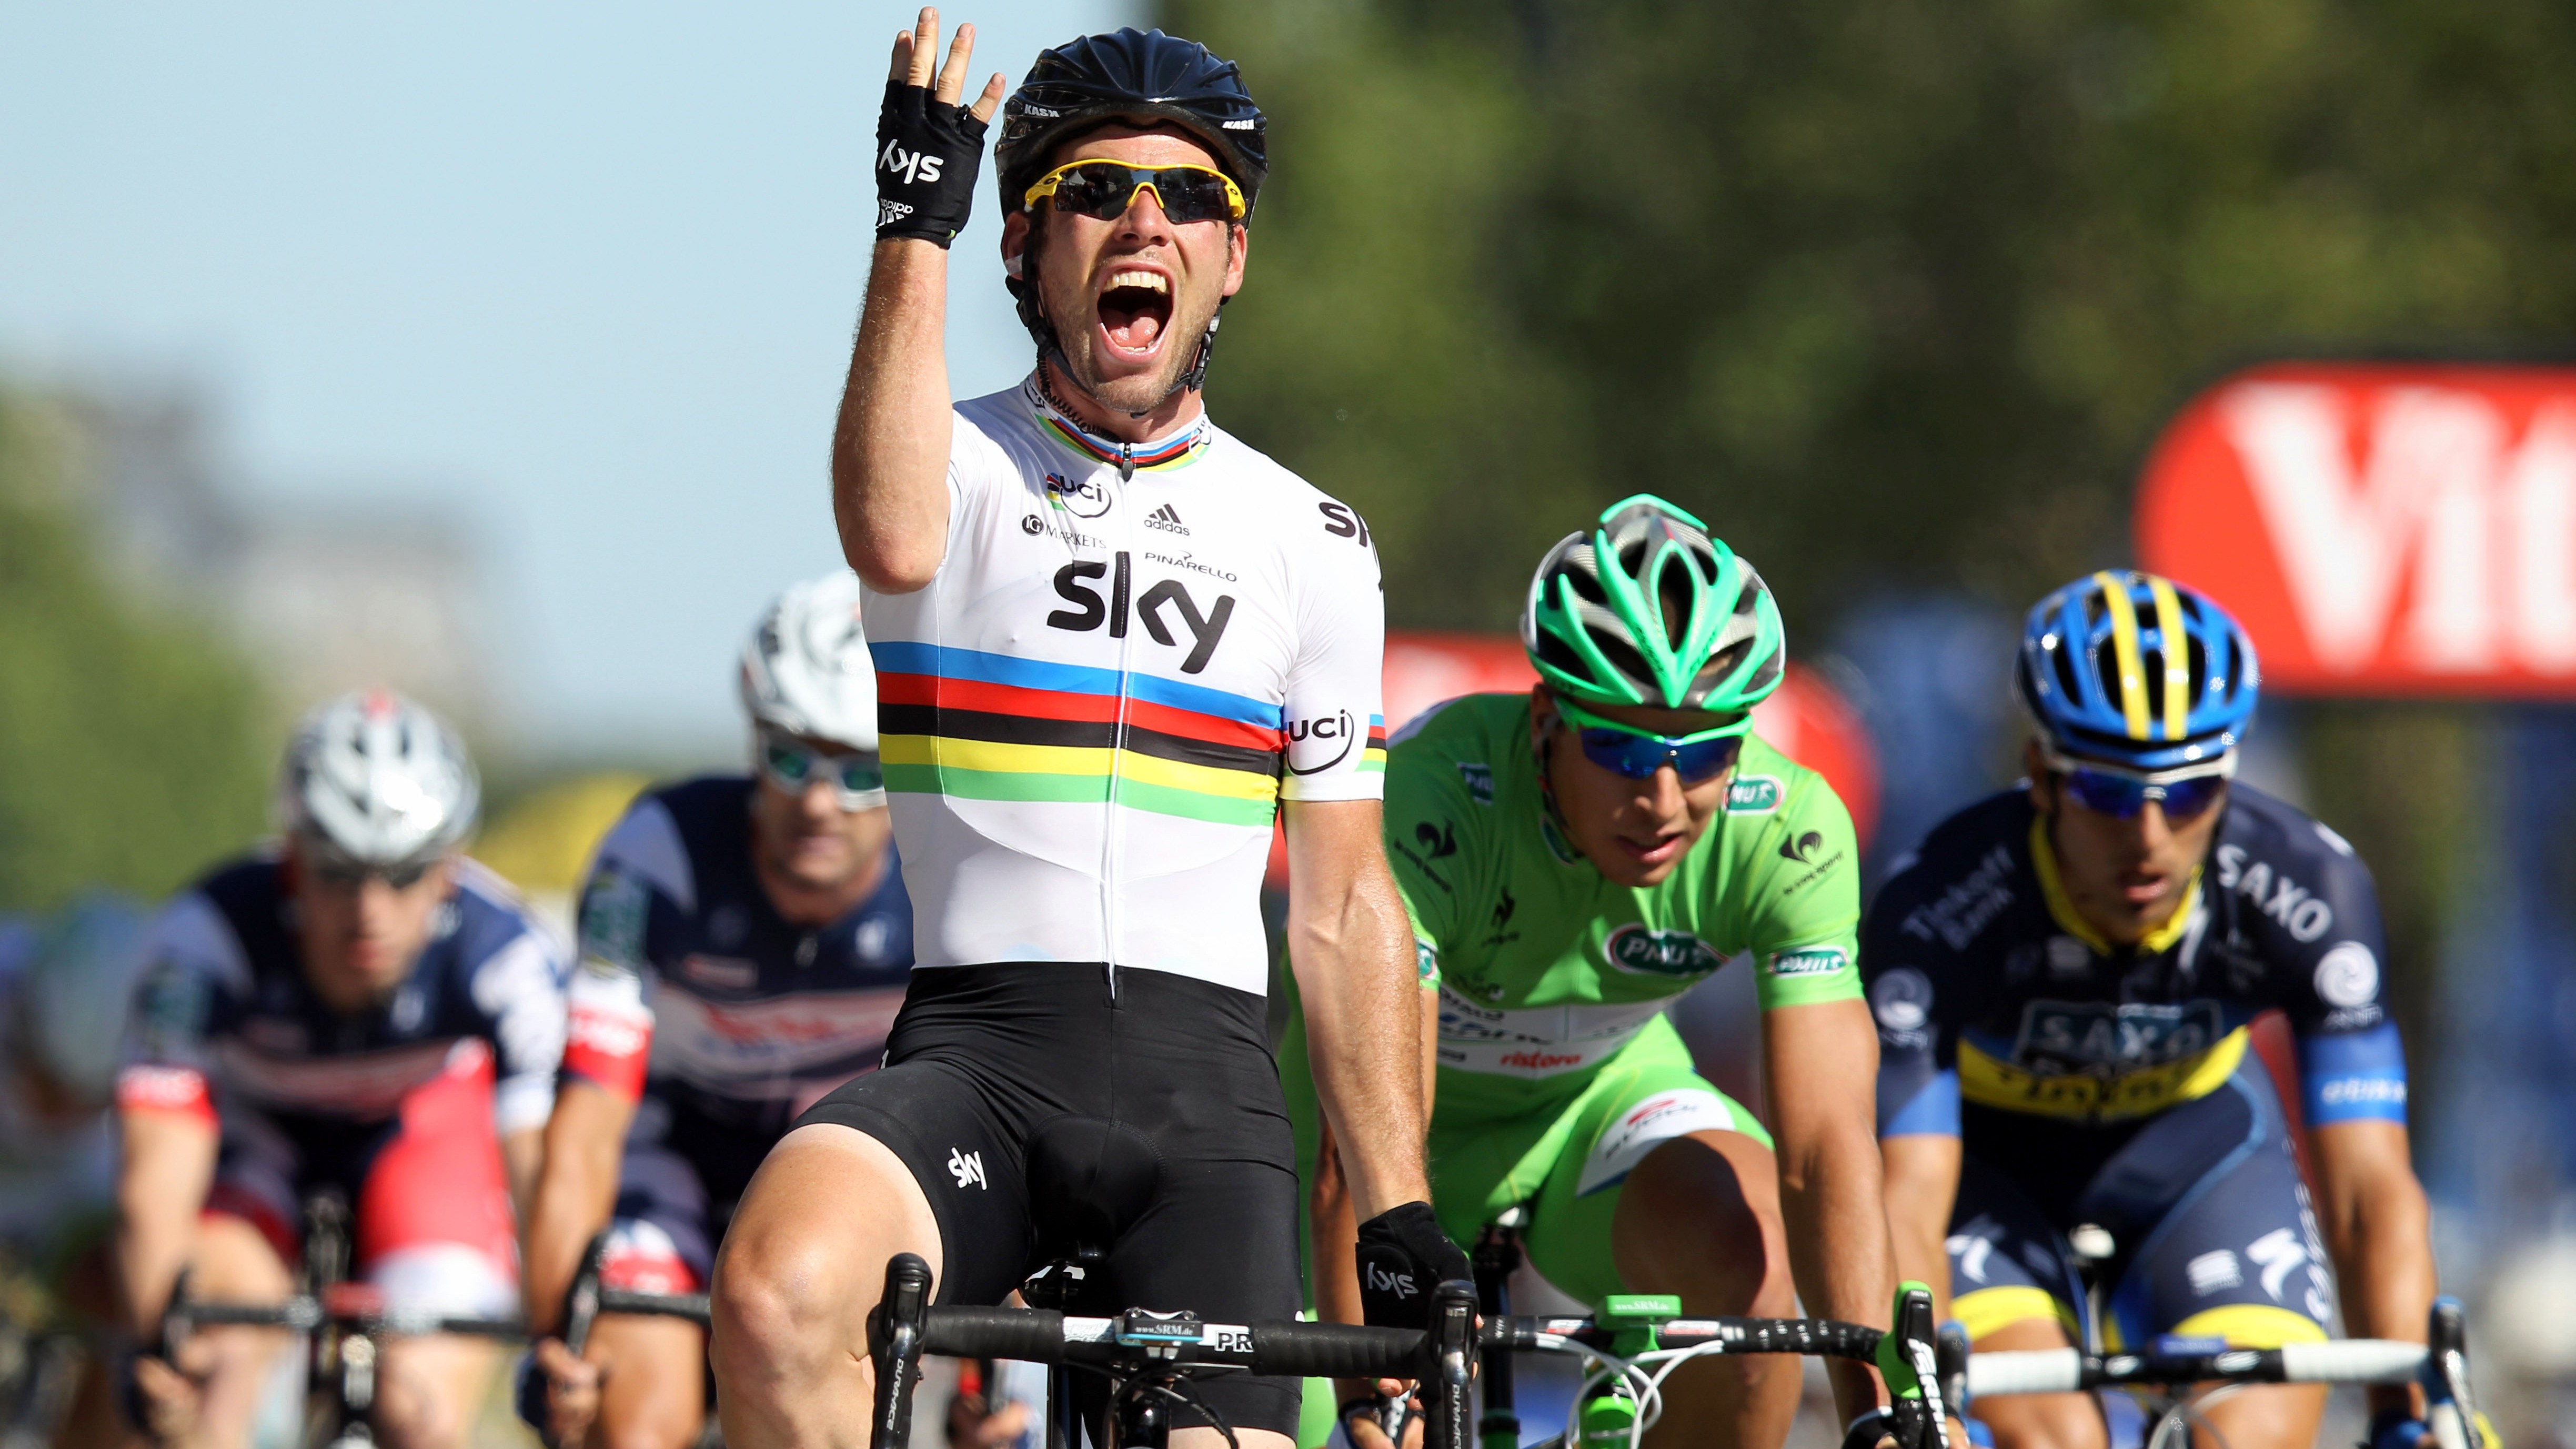 Mark_Cavendish_triumf Tour de France